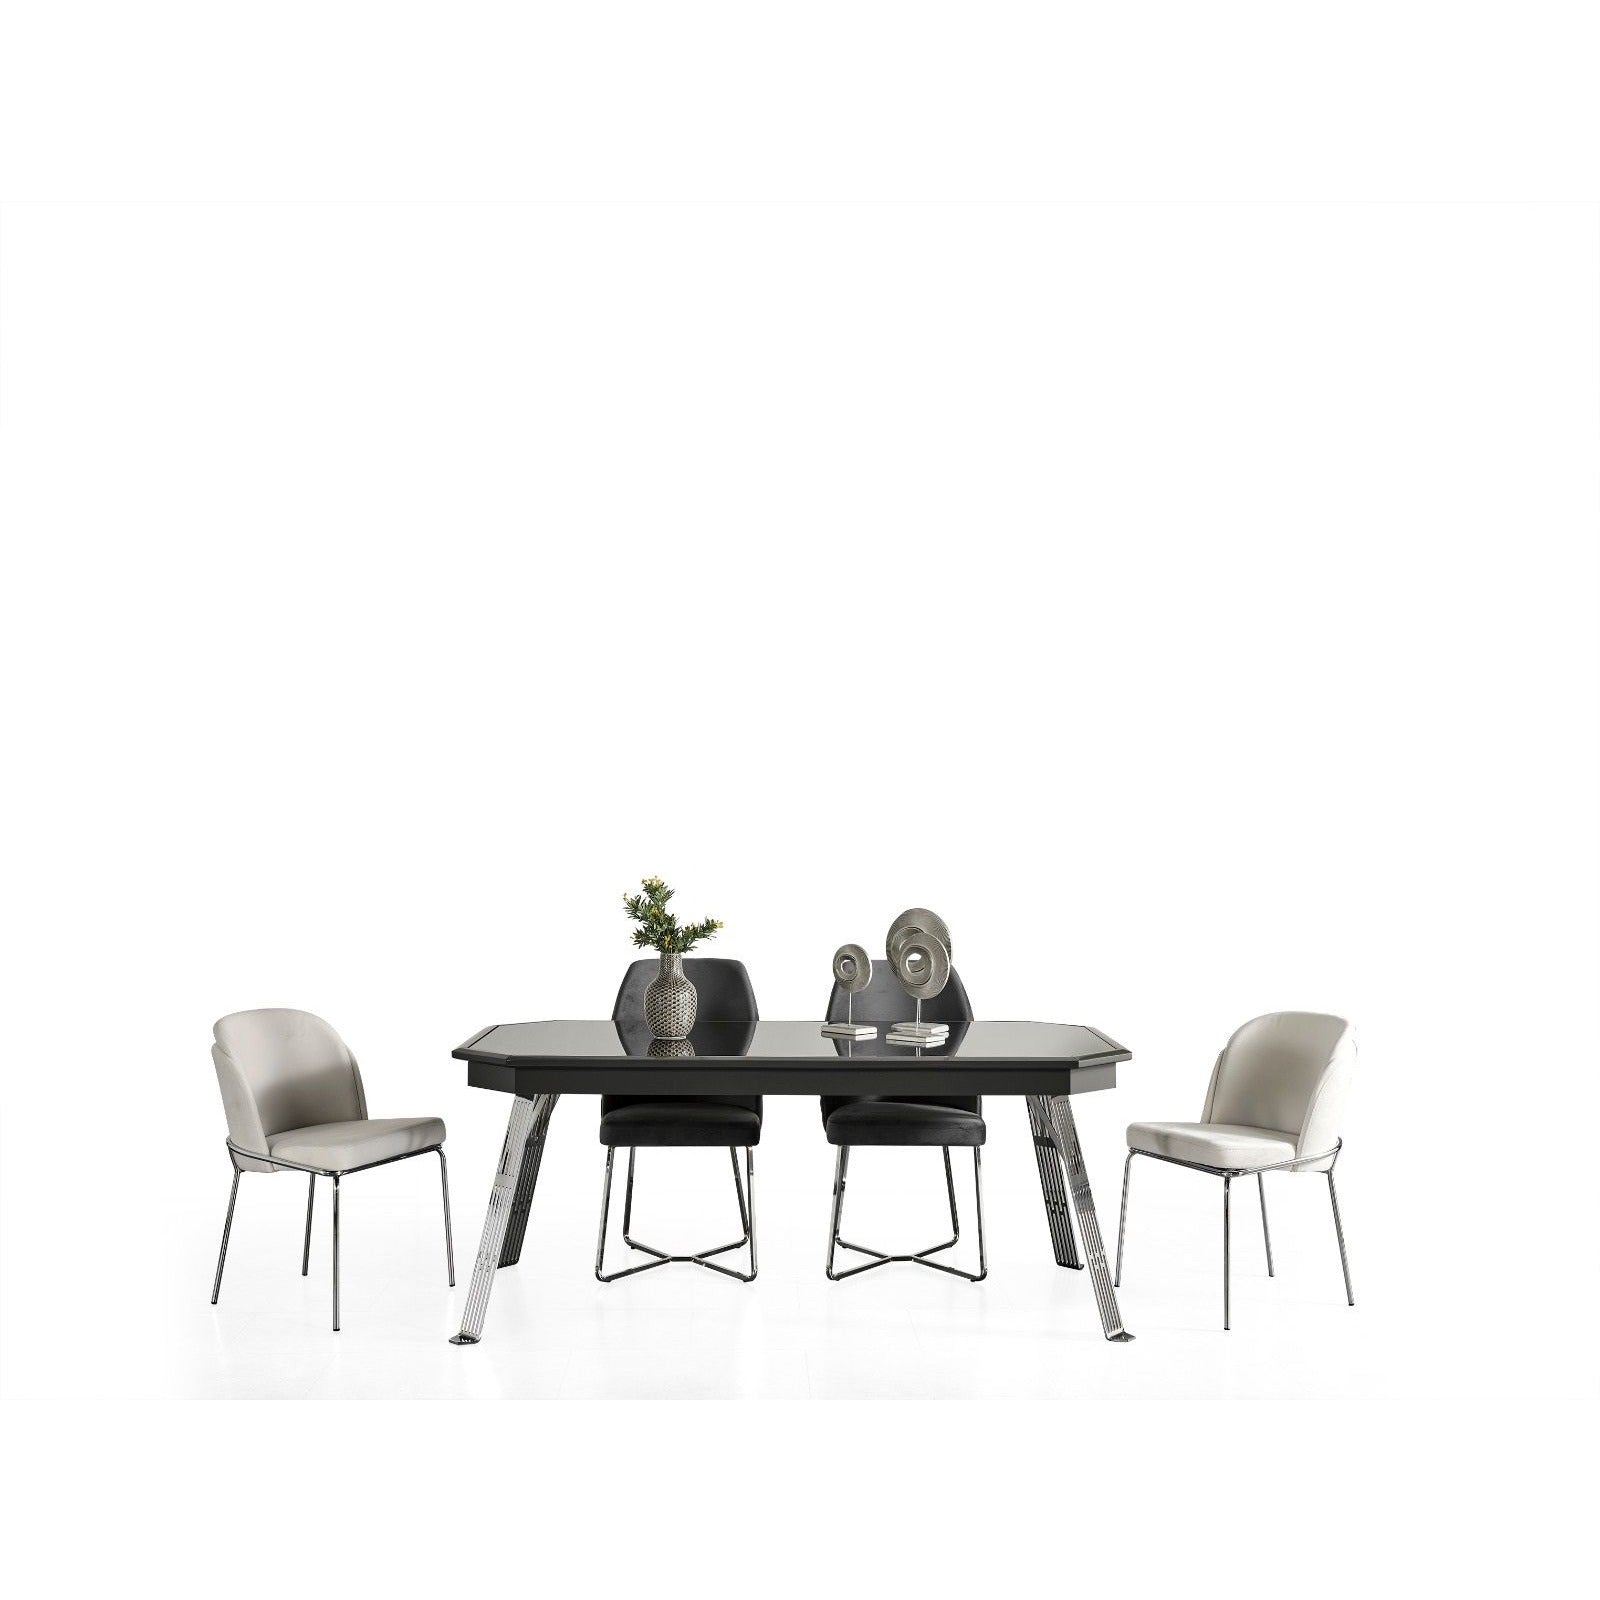 Madrid Skänk - LINE Furniture Group